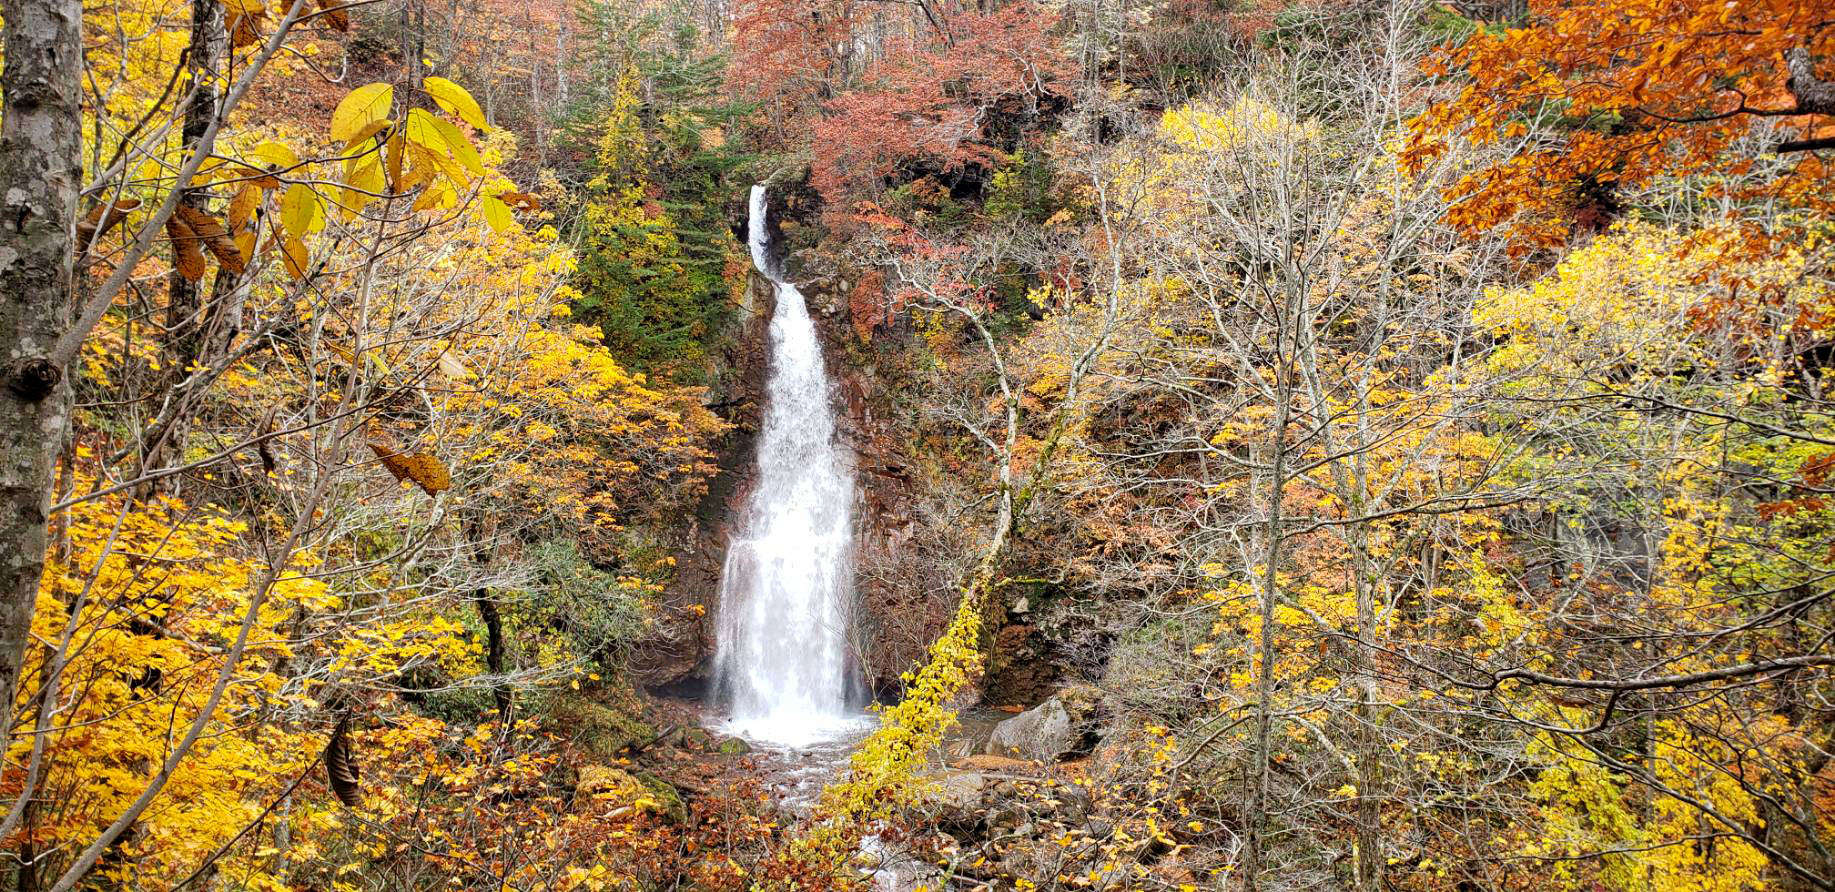 Nantaki Falls is Unbelievably Beautiful in Autumn